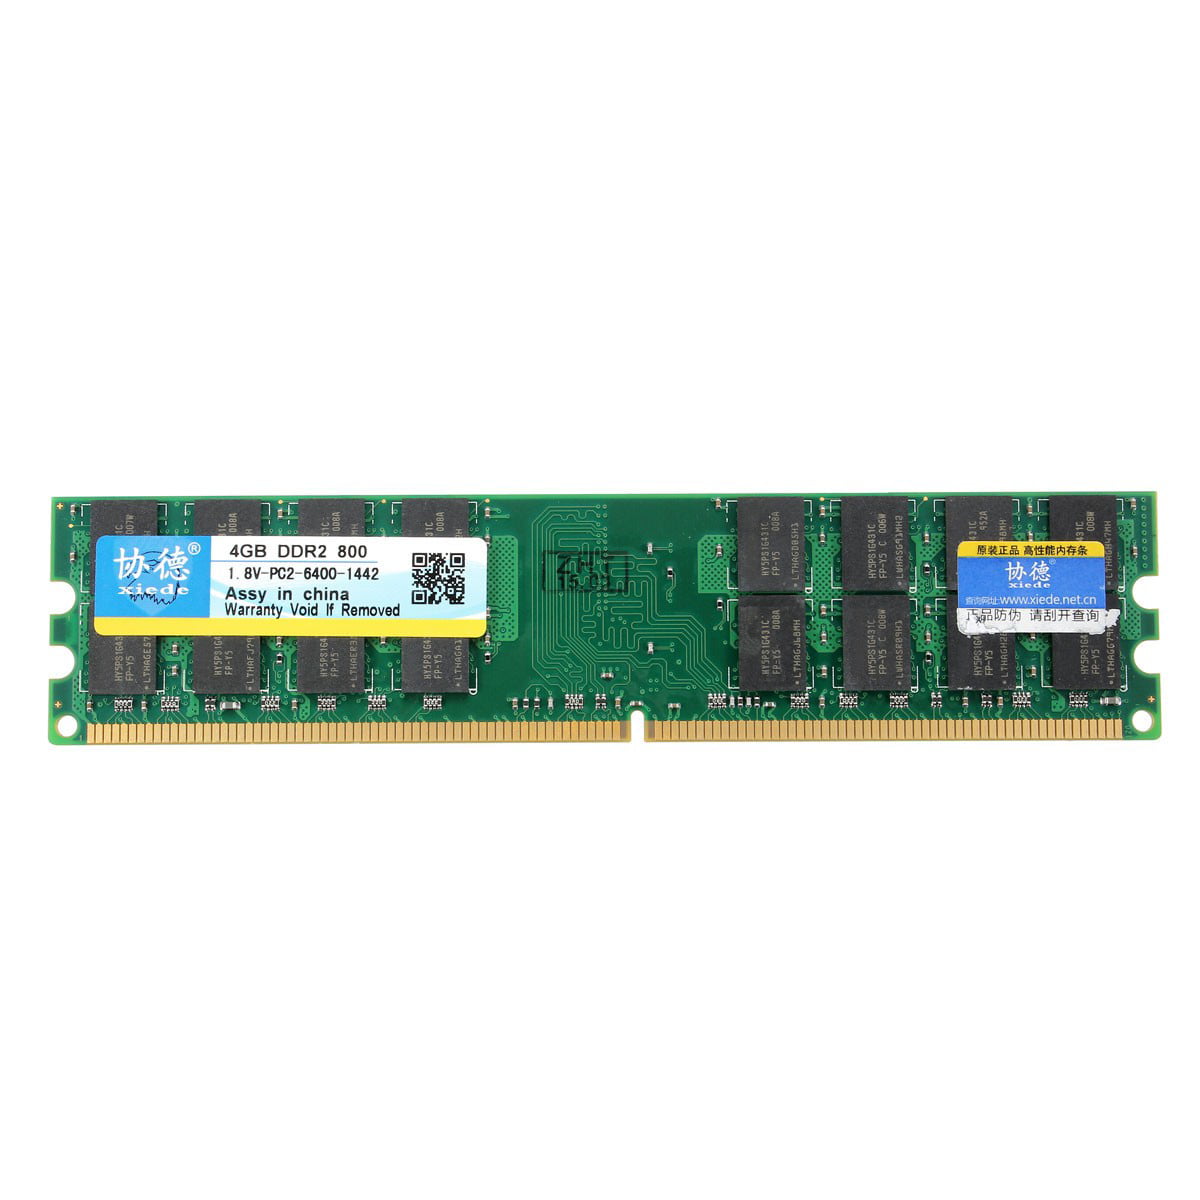 OFFTEK 4GB Replacement RAM Memory for Gigabyte GA-P43-ES3G Rev 1.0 Motherboard Memory DDR2-6400 - Non-ECC